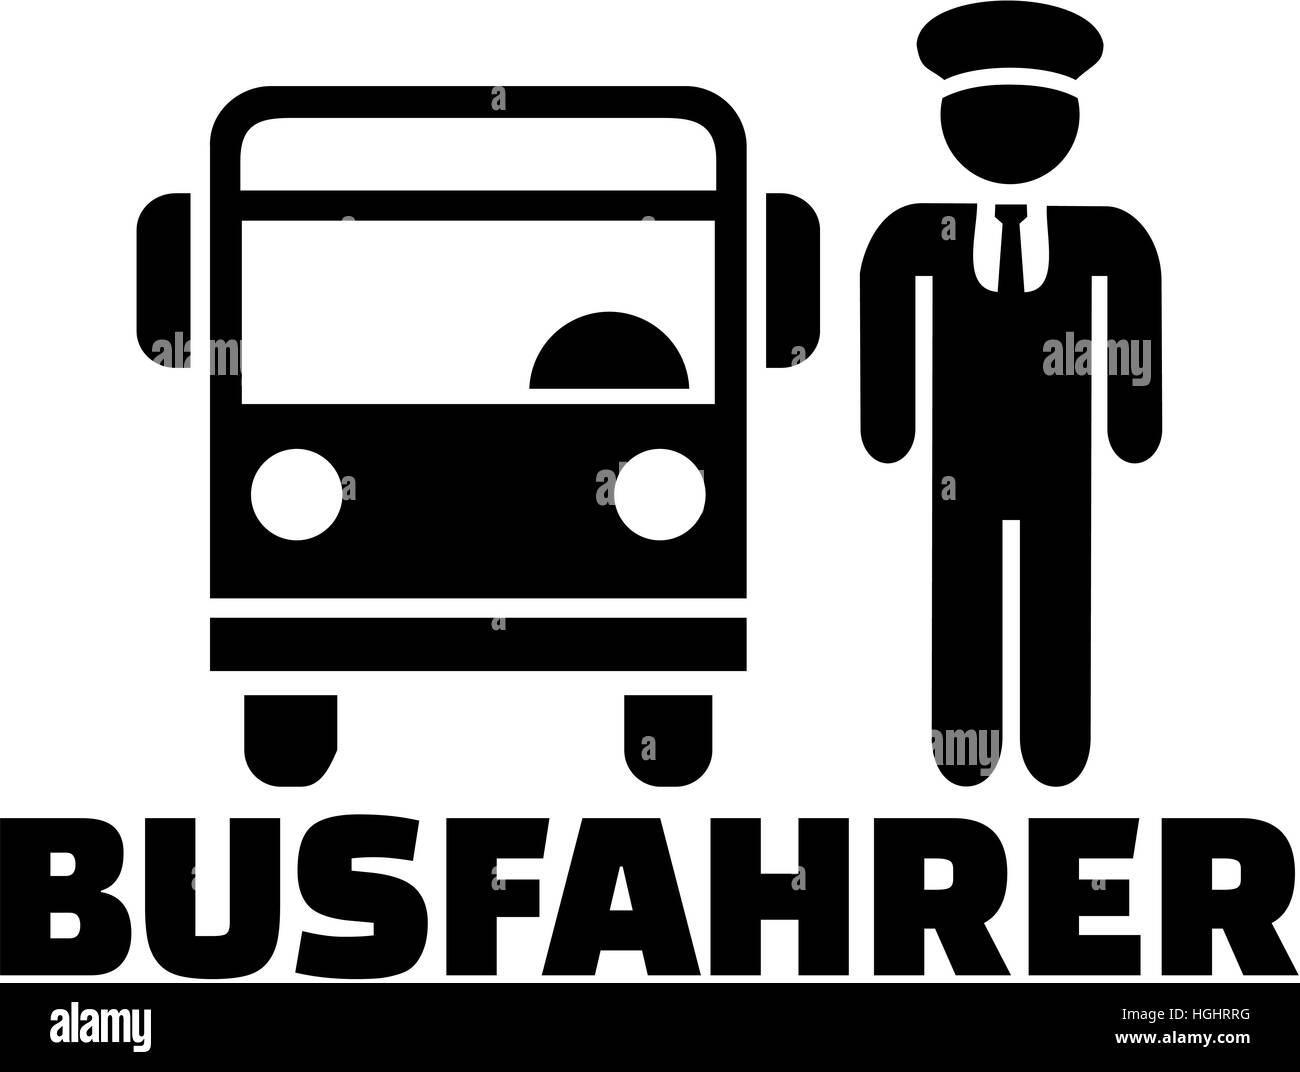 Bus Fahrer deutsches Wort mit Piktogramm Stockfoto